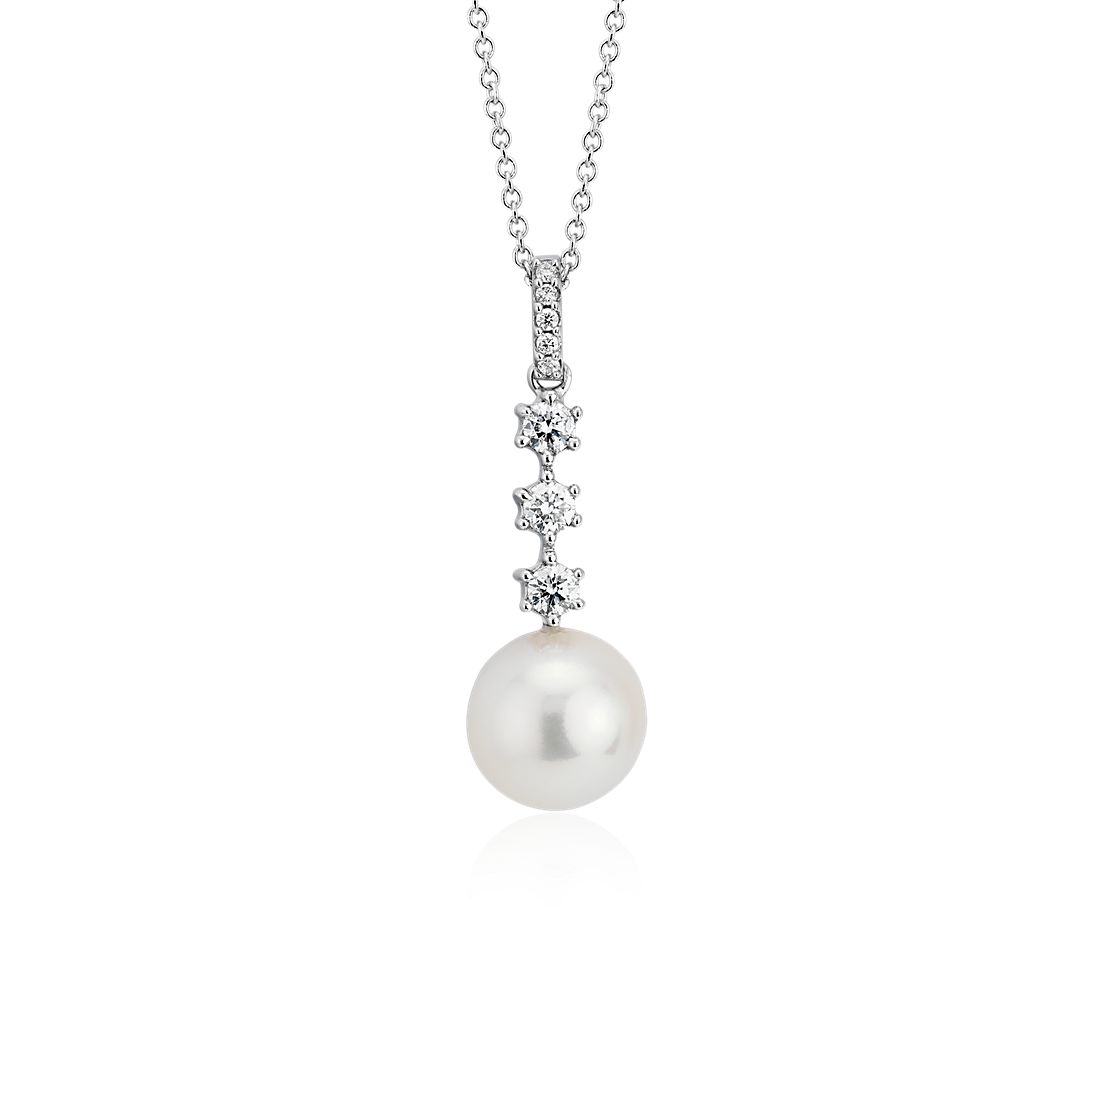 Diamond pearl drop necklace 1151 cpus